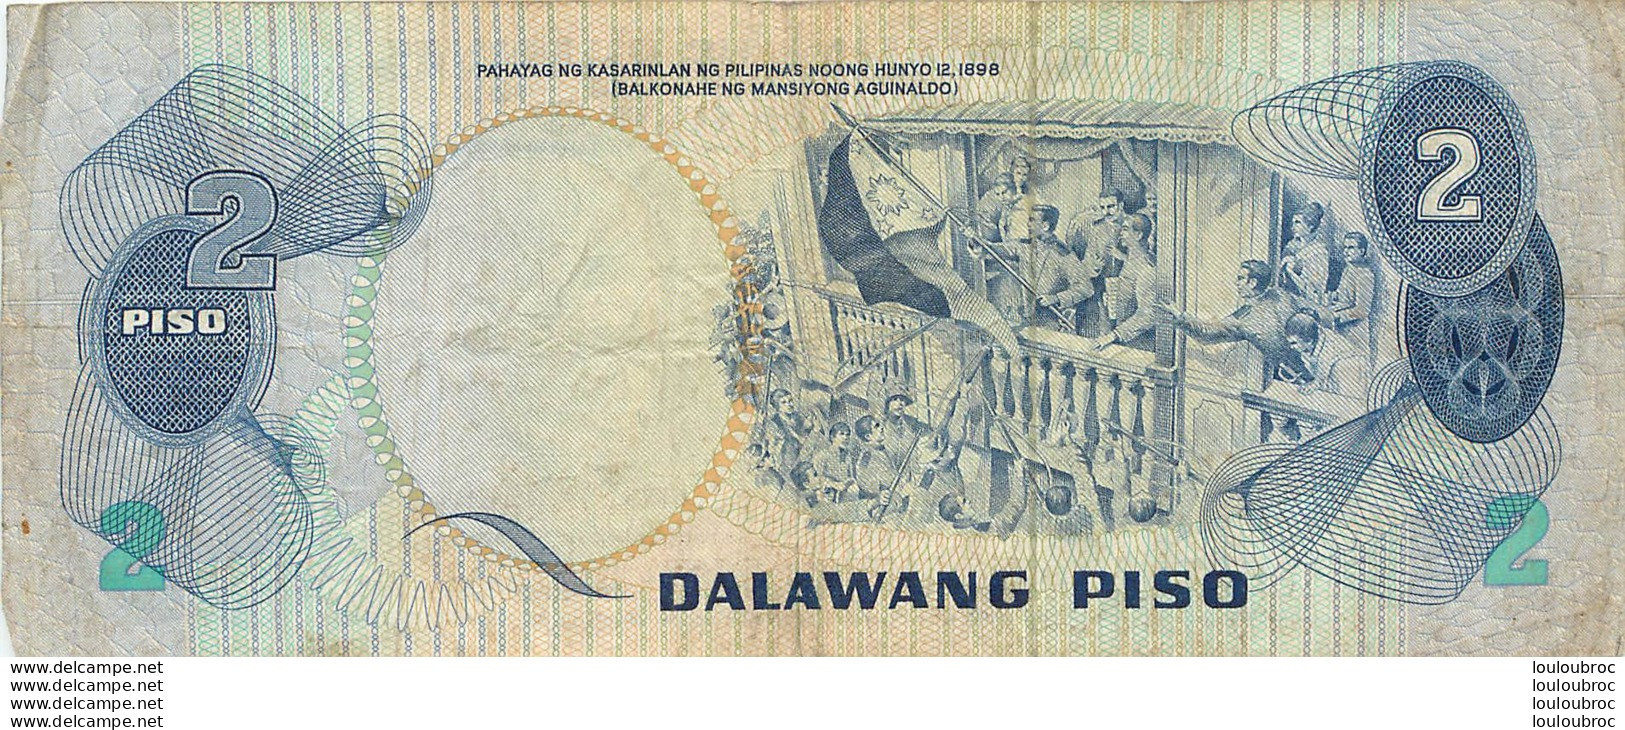 BILLET   REPUBLIKA NG  PILIPINAS 2 DALAWANG PISO - Philippinen